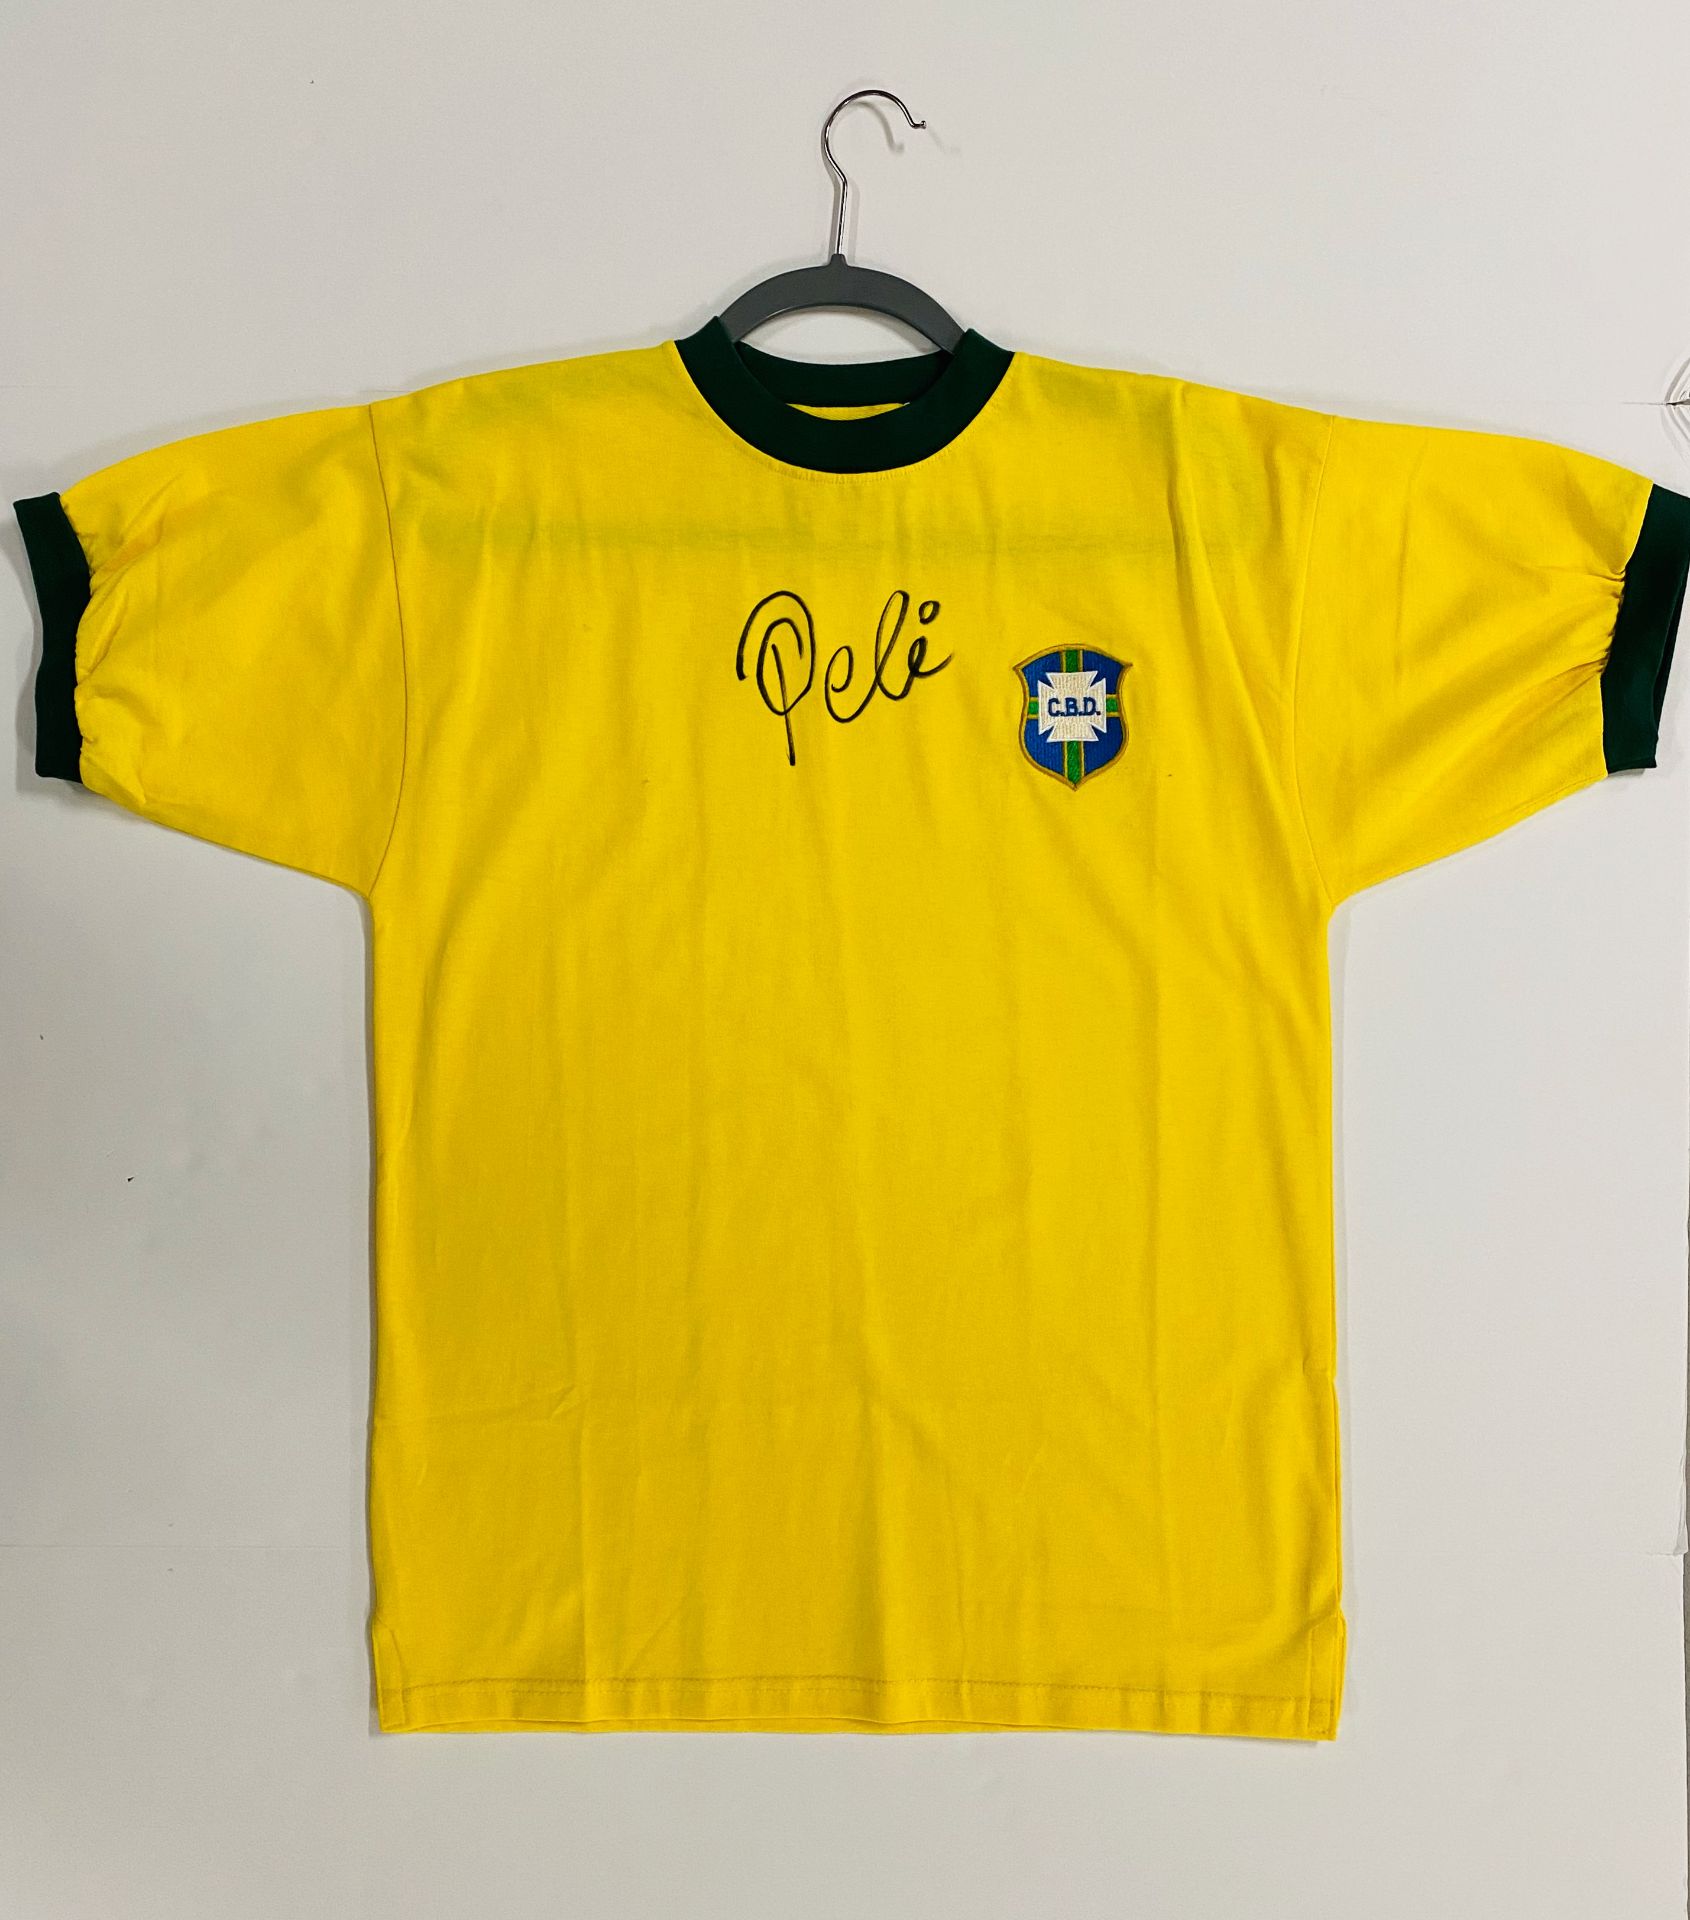 Brazil jersey signed by Pele